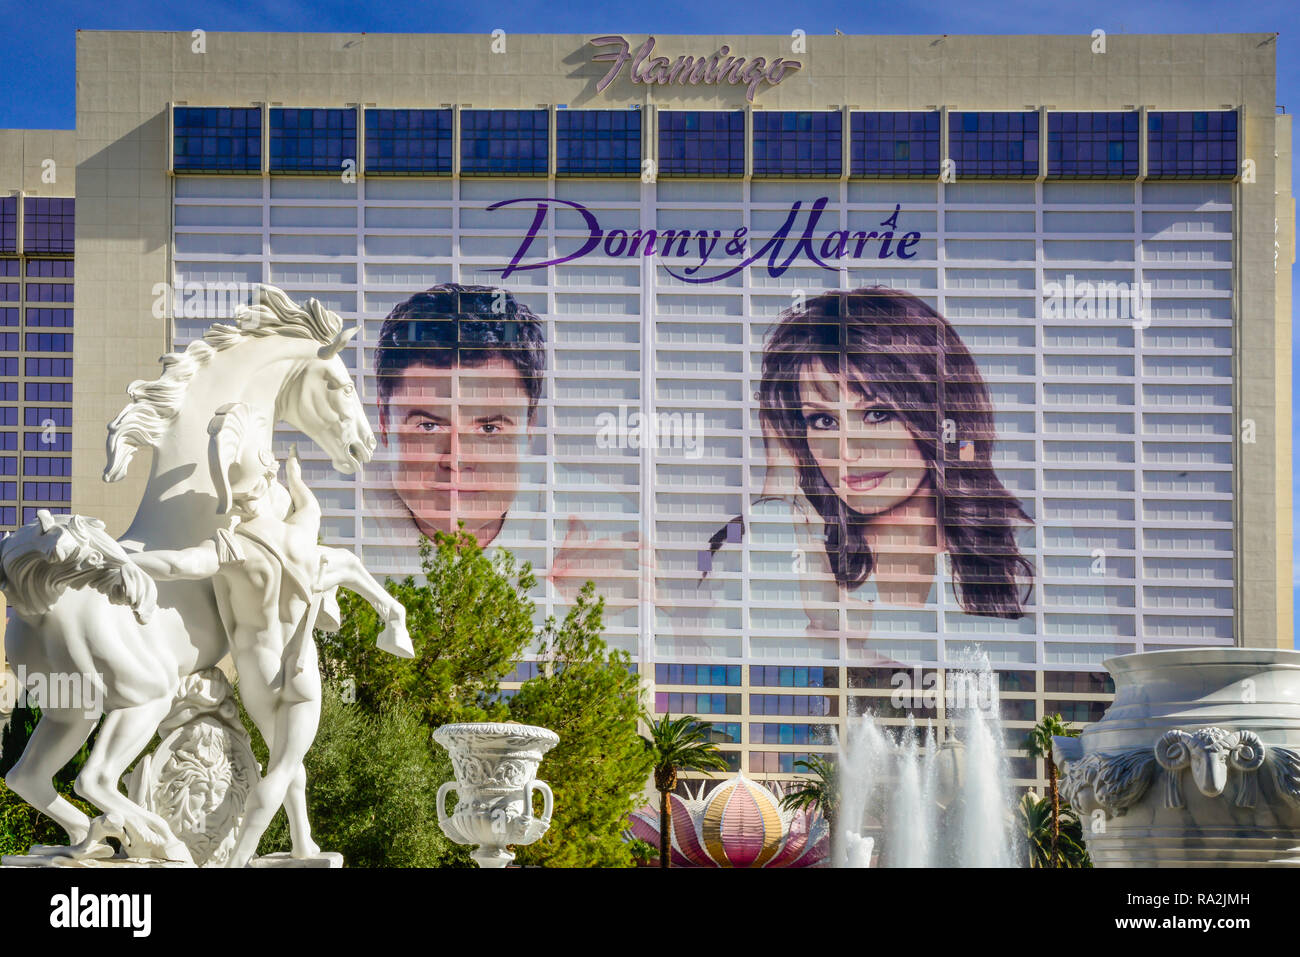 Avec le Caesars Palace statuary en premier plan, Donnie et Marie sont de la publicité sur le Flamingo Hotel et Casino, sur la séquence dans la région de Las Vegas, NV Banque D'Images